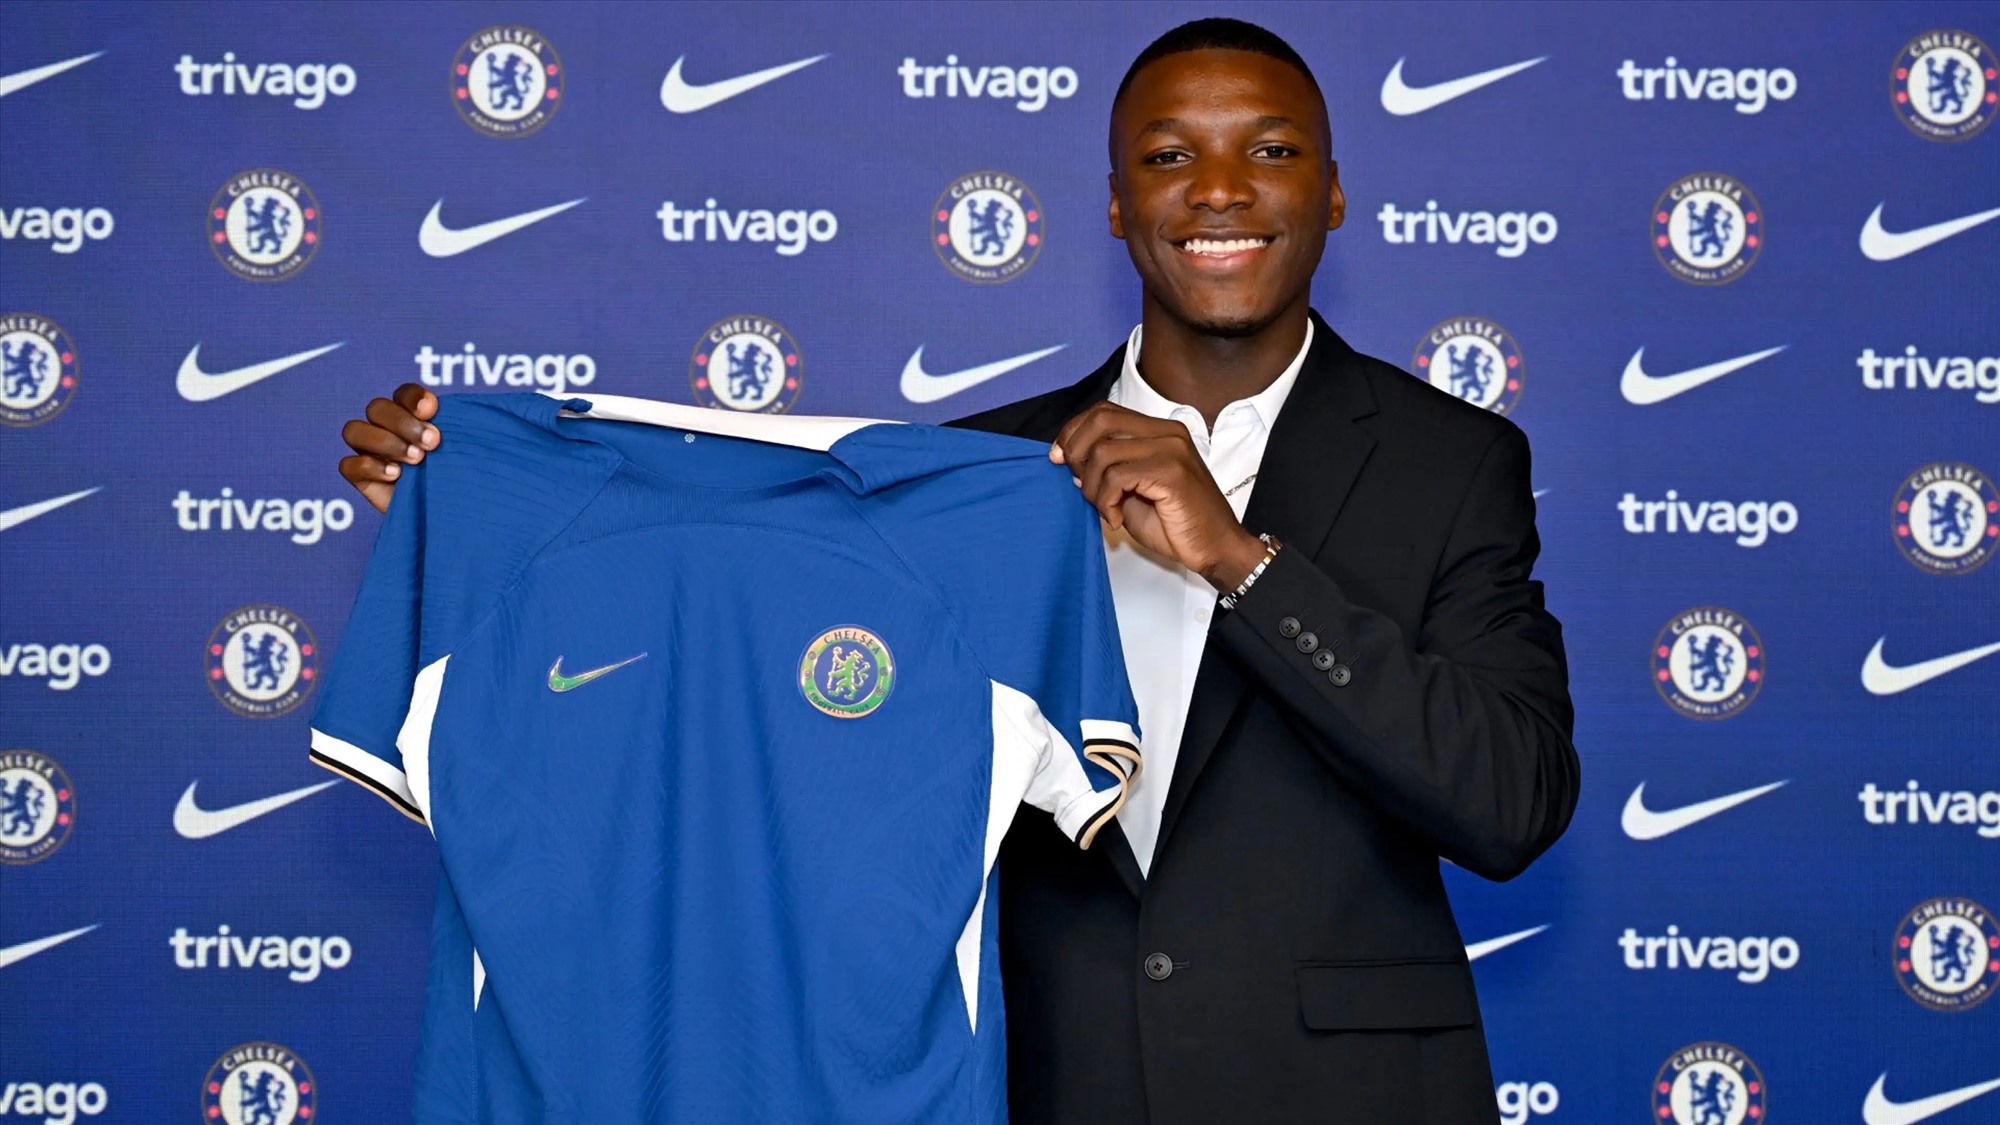 Moises Caicedo trong màu áo mới sau scandal chuyển nhượng gây bão Premier League. Ảnh: Chelsea FC